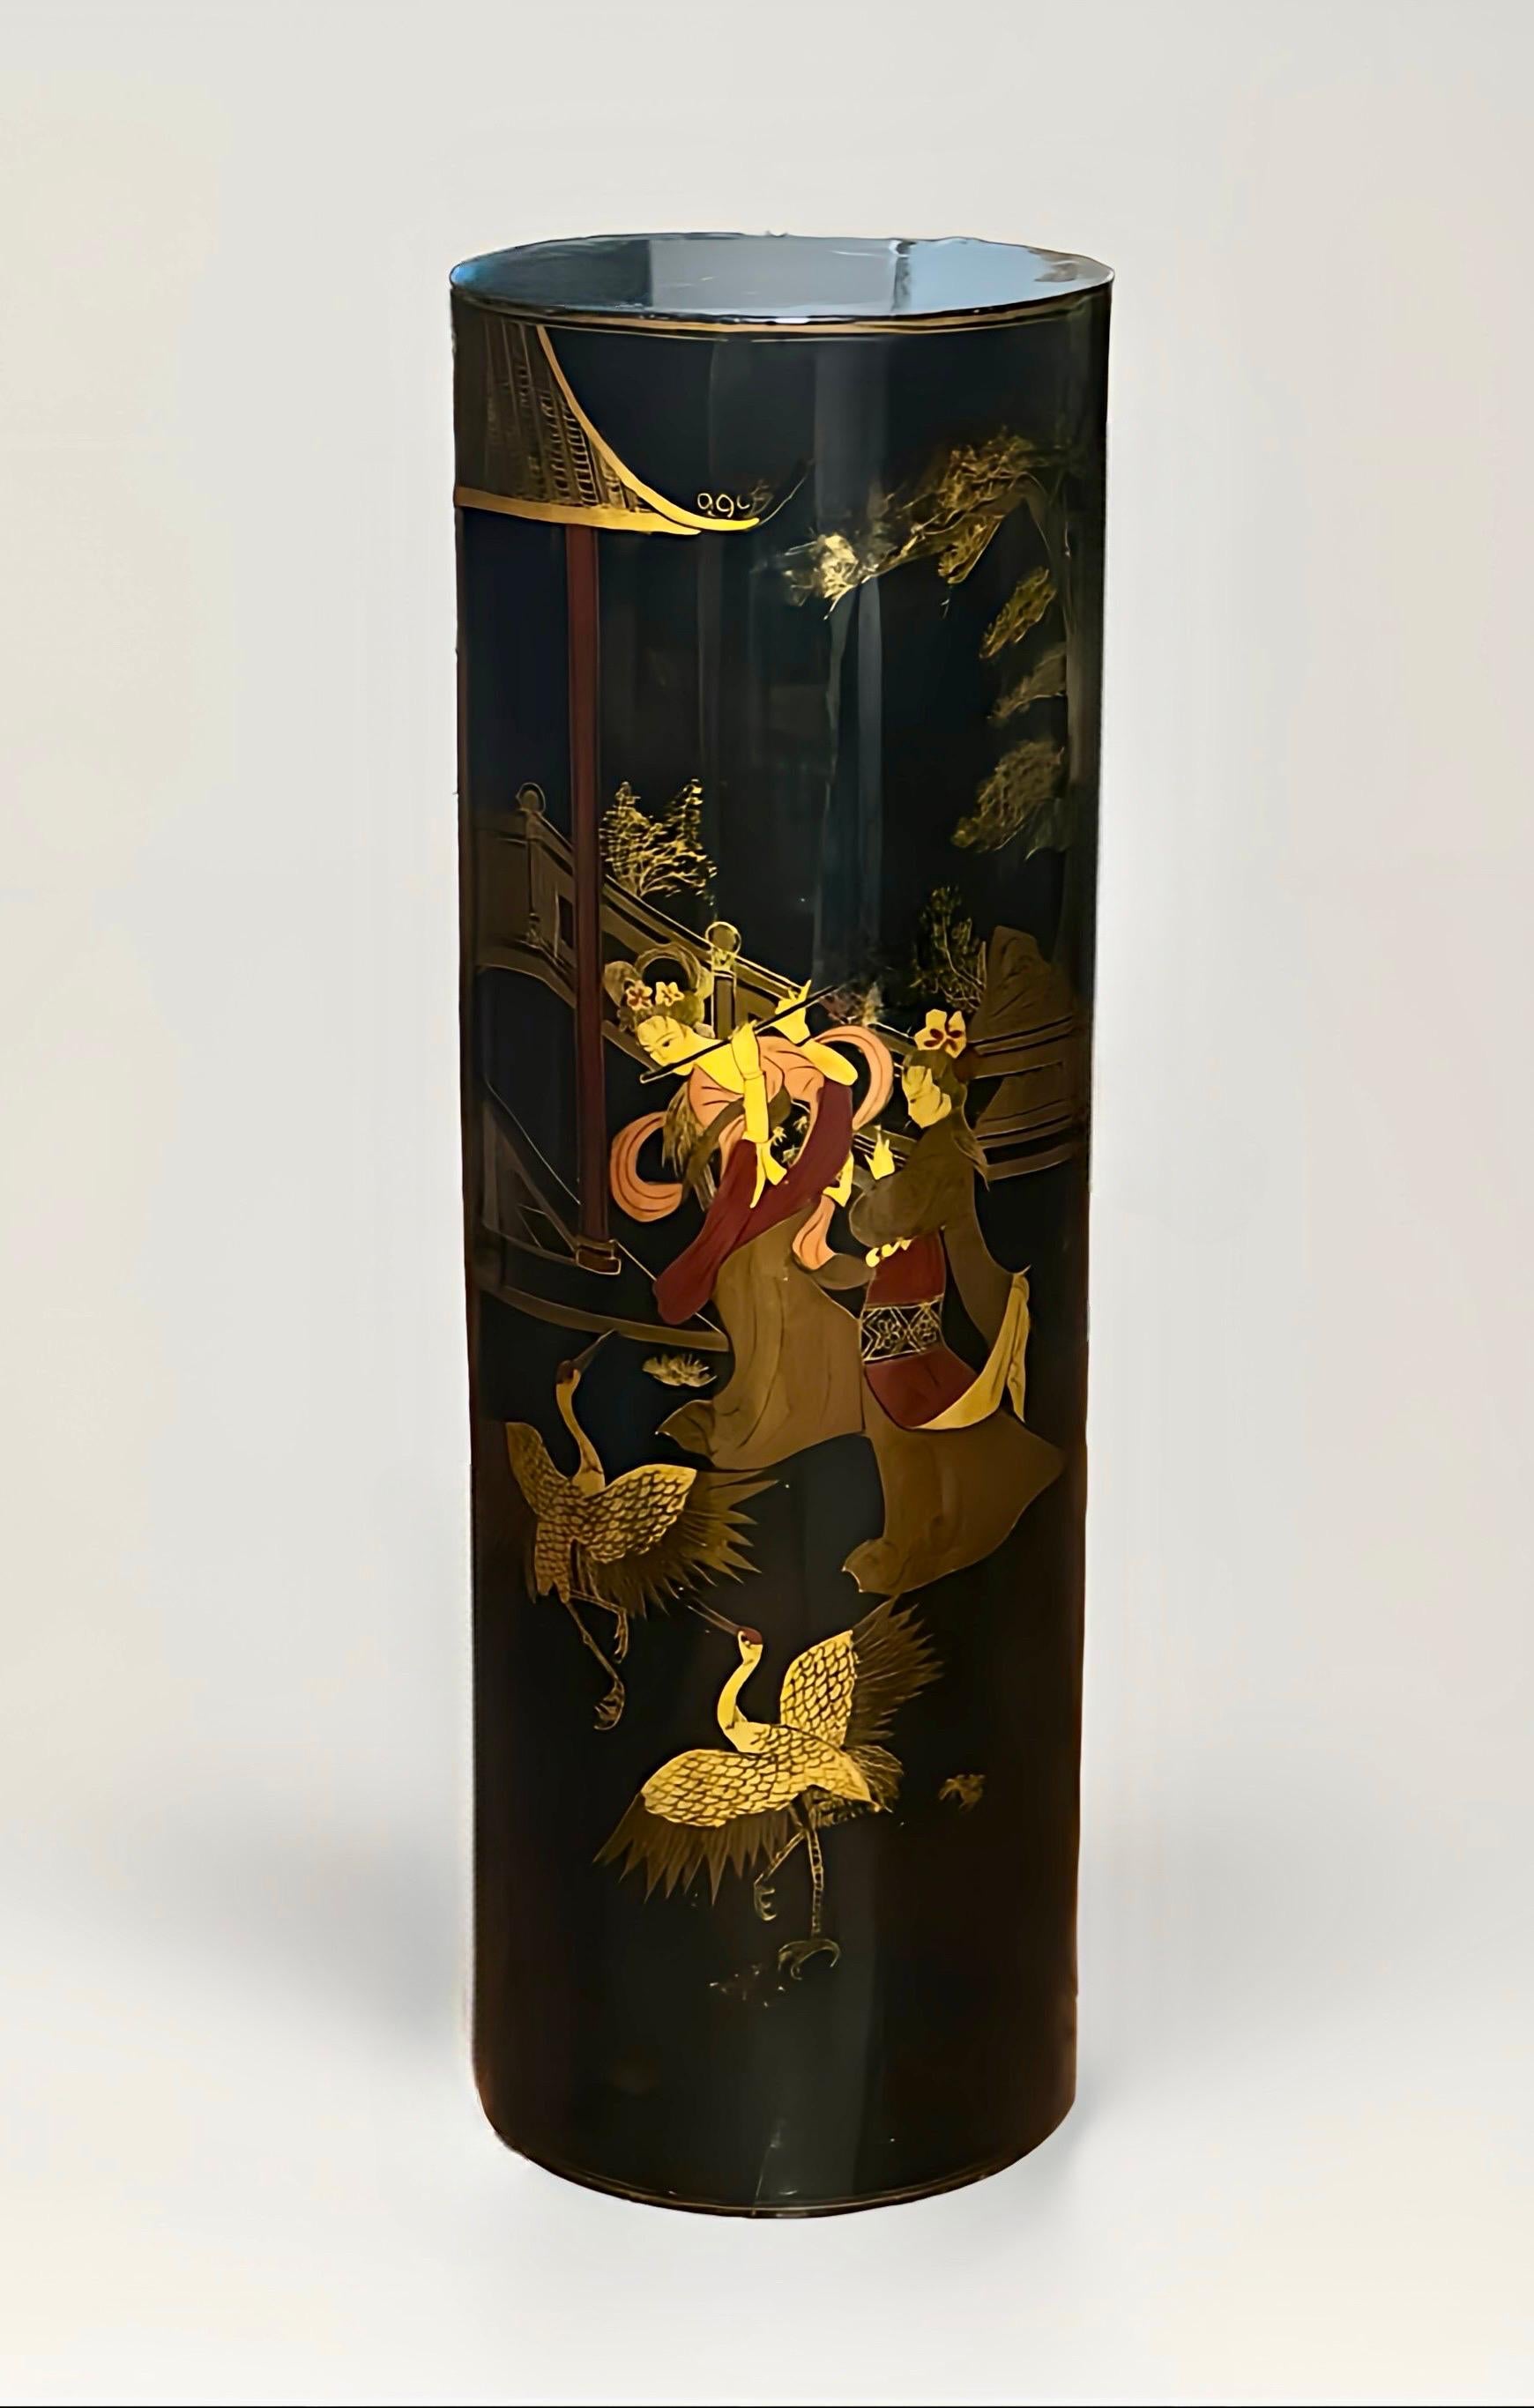 Socle cylindrique chinois en bois laqué noir, années 1960.

Exquis piédestal avec une scène représentant des dames élégantes dans un jardin pavillonnaire avec des oiseaux, des architectures et des arbres. Une œuvre pittoresque avec de belles